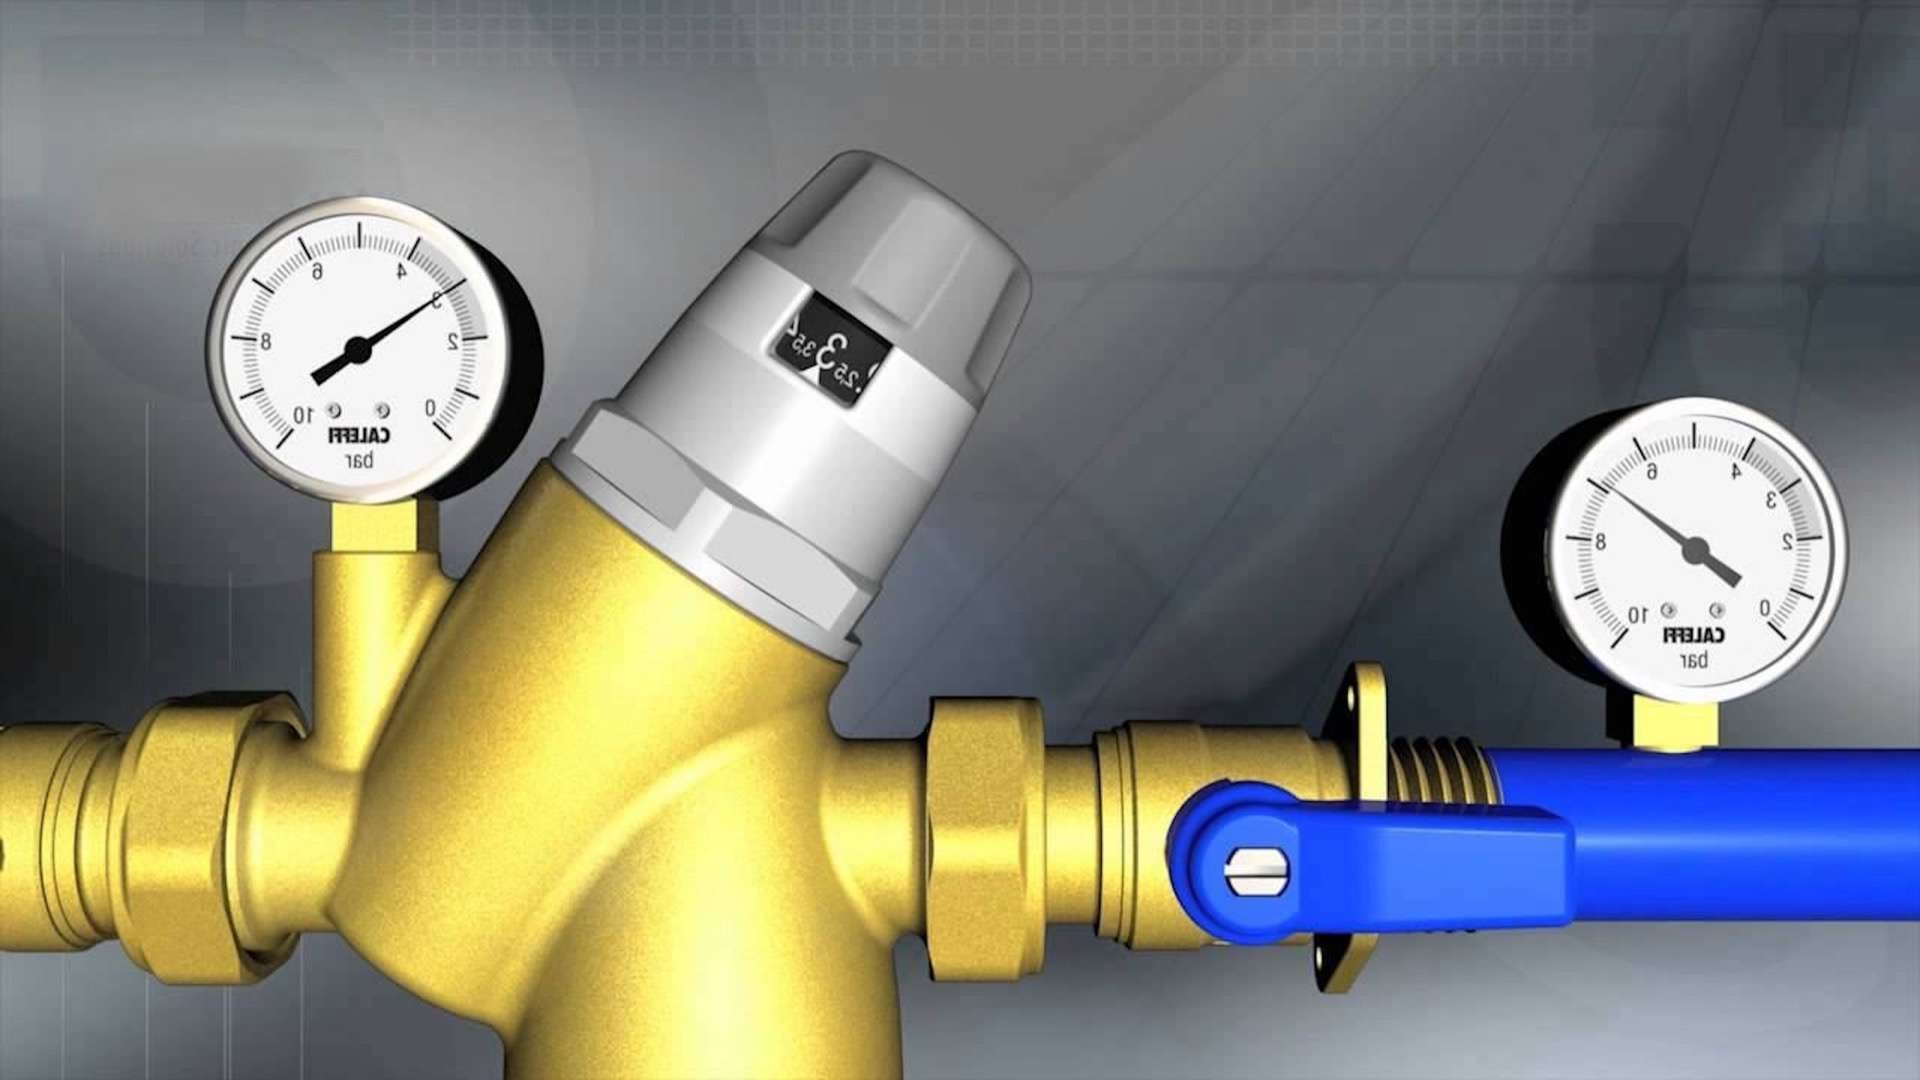 Pompe à eau : fonctionnement, entretien et prix